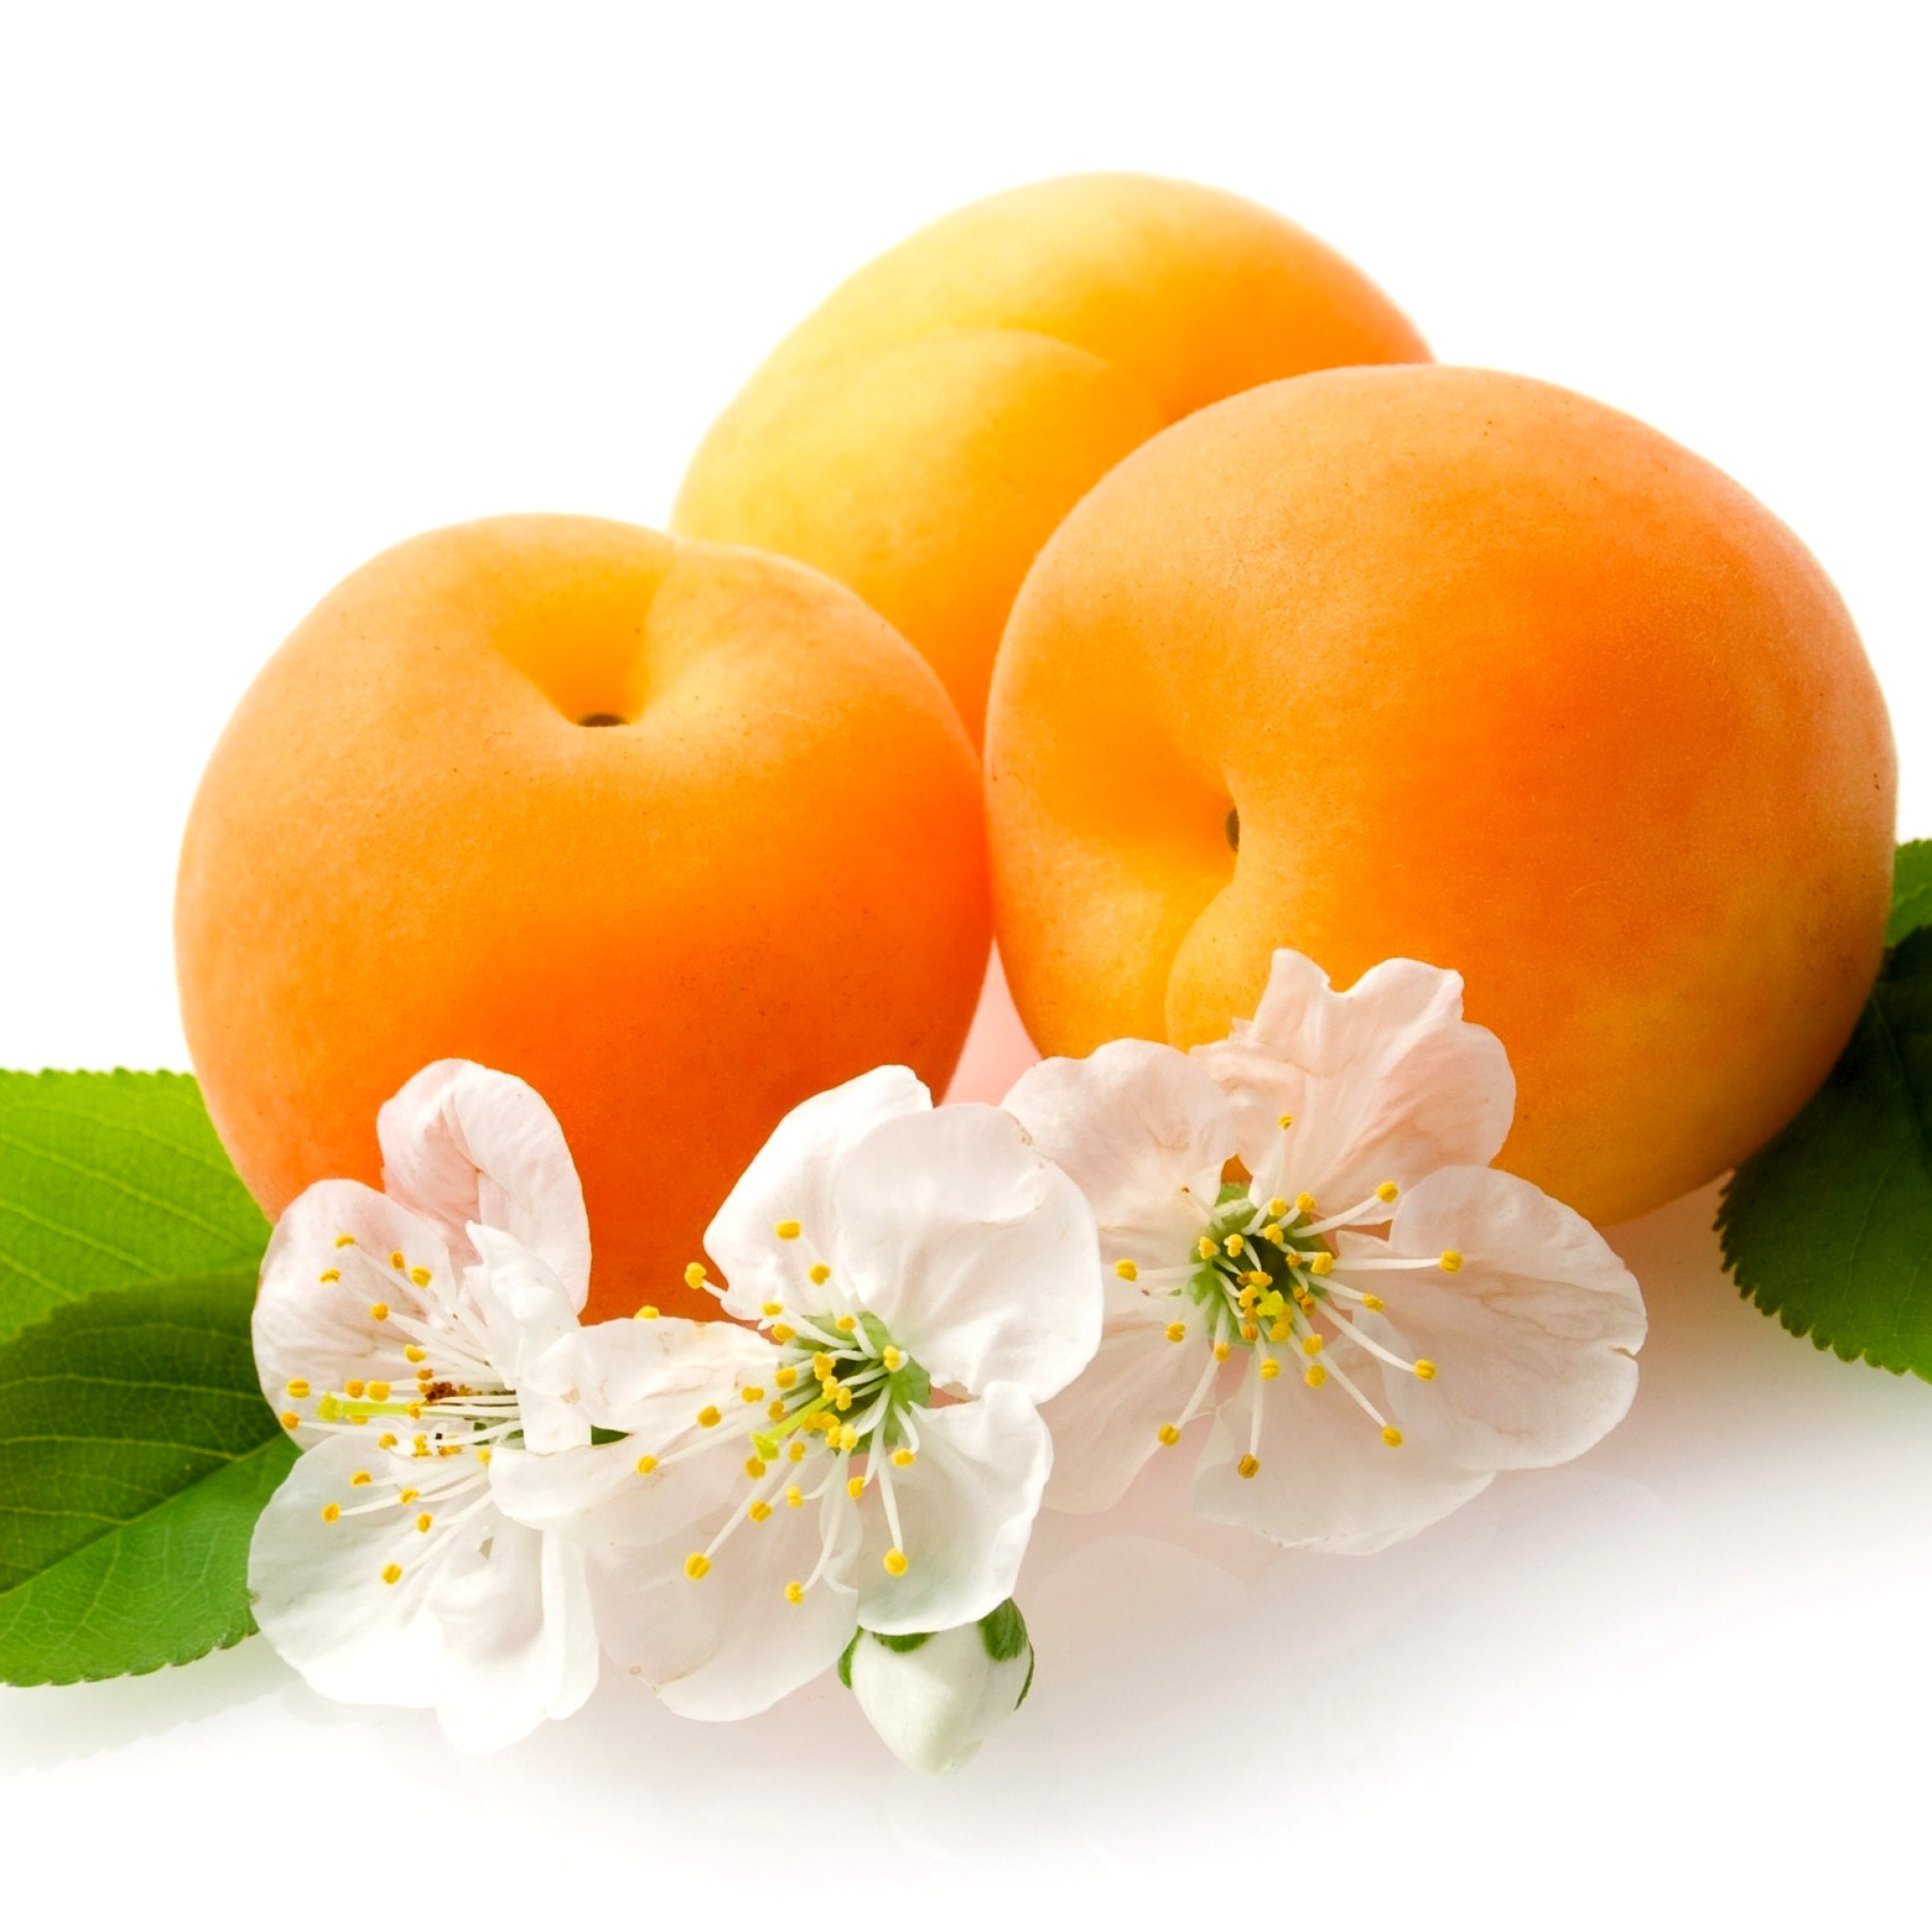 Apricot Fruit wallpaper 2048x2048